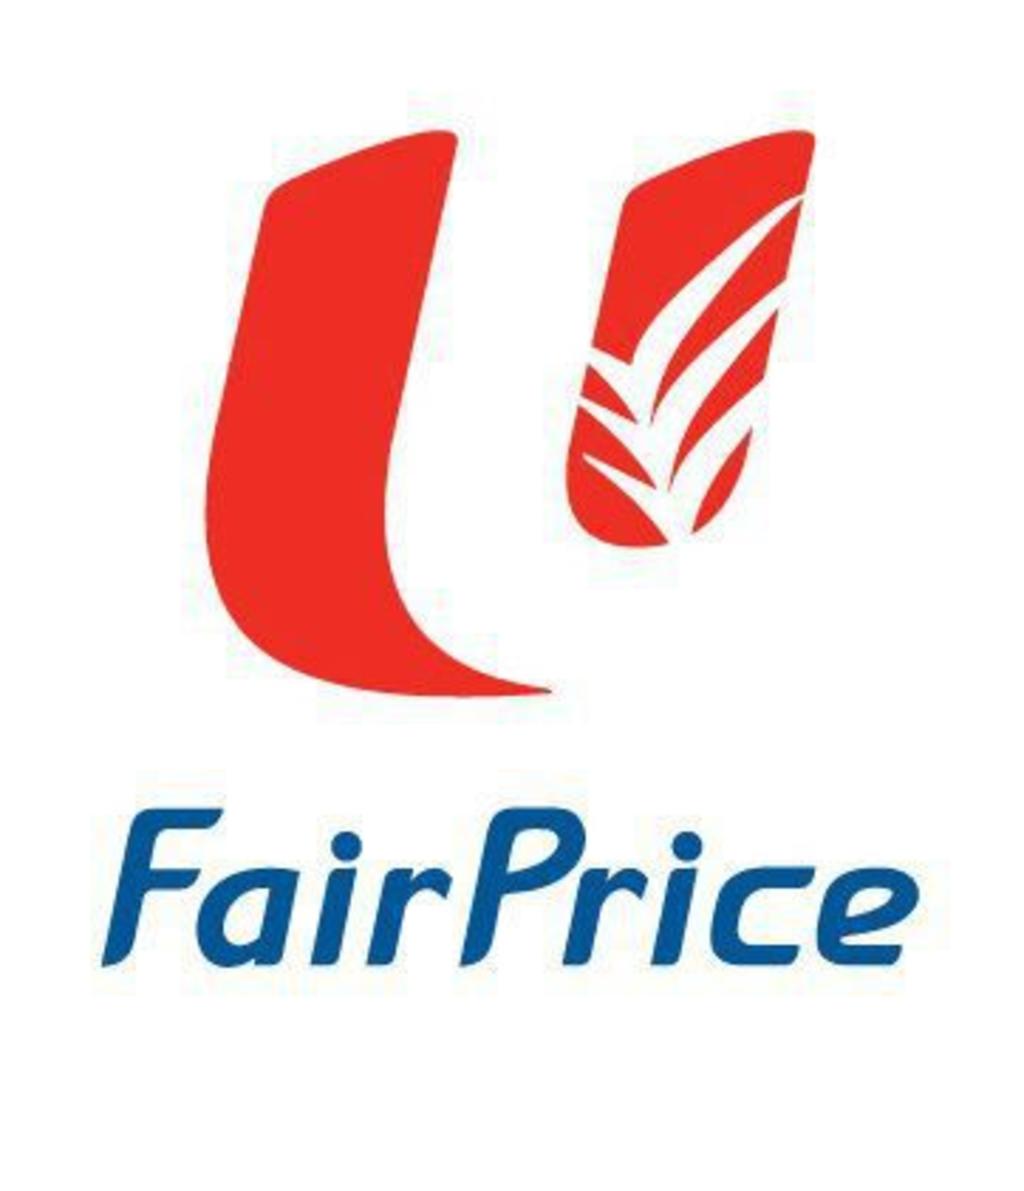 fairprice logo